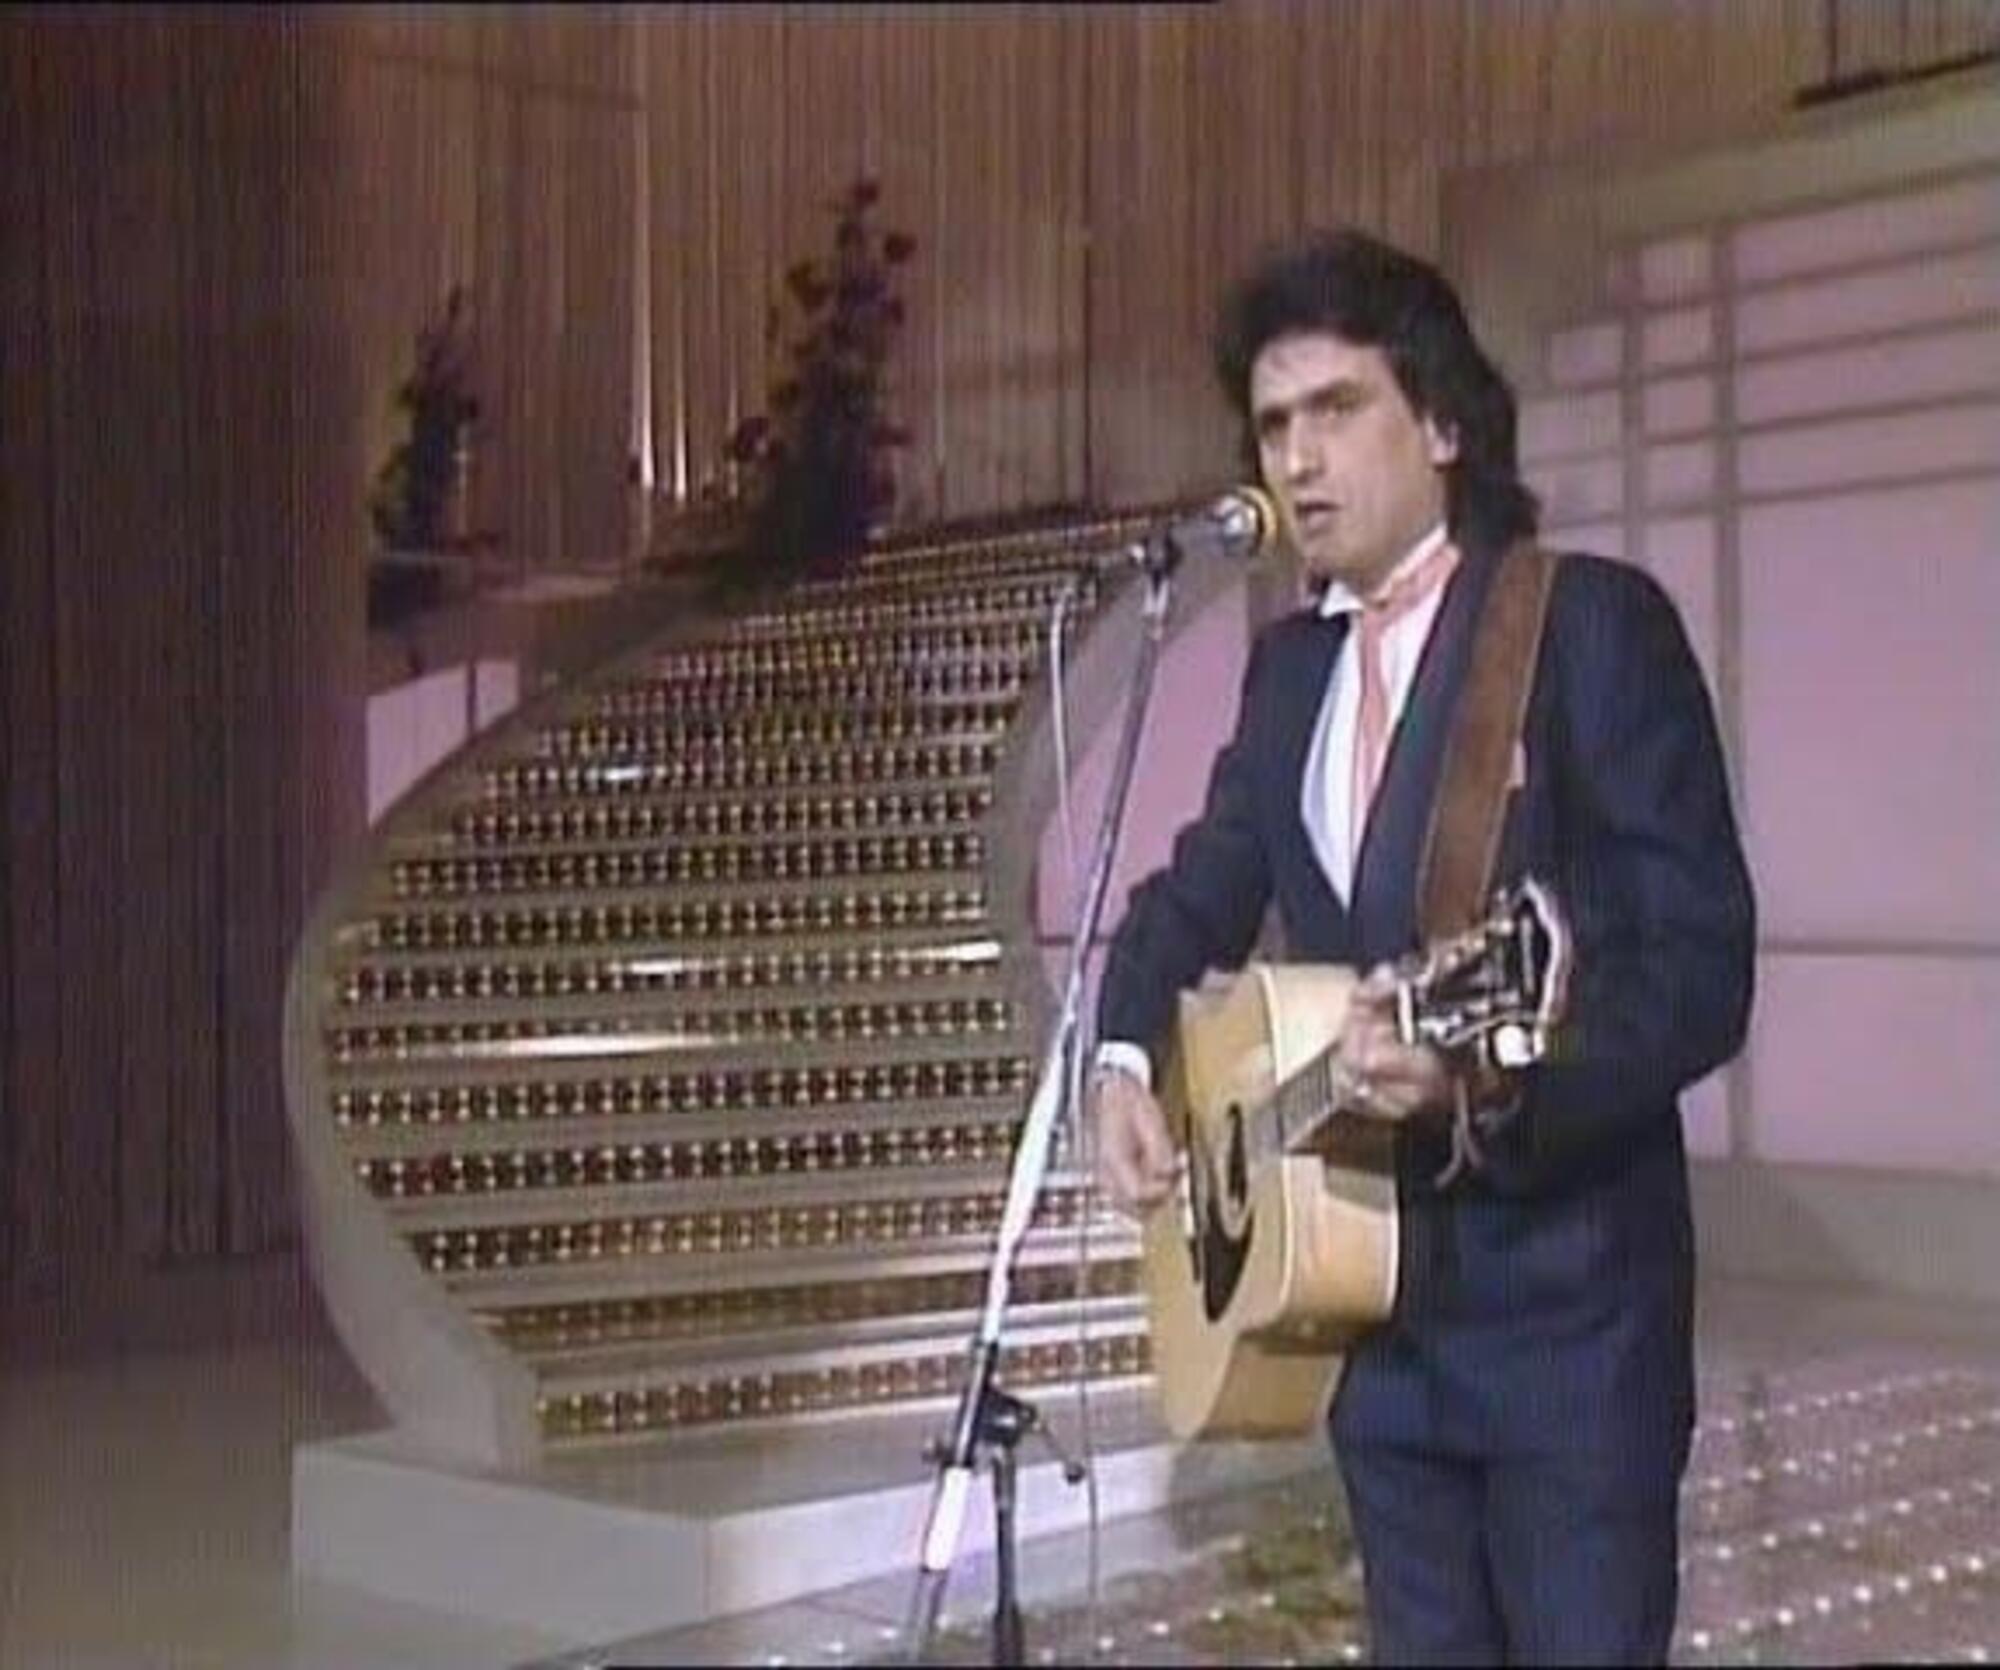 Toto Cutugno canta &ldquo;L&rsquo;italiano&rdquo; a Sanremo nel 1983